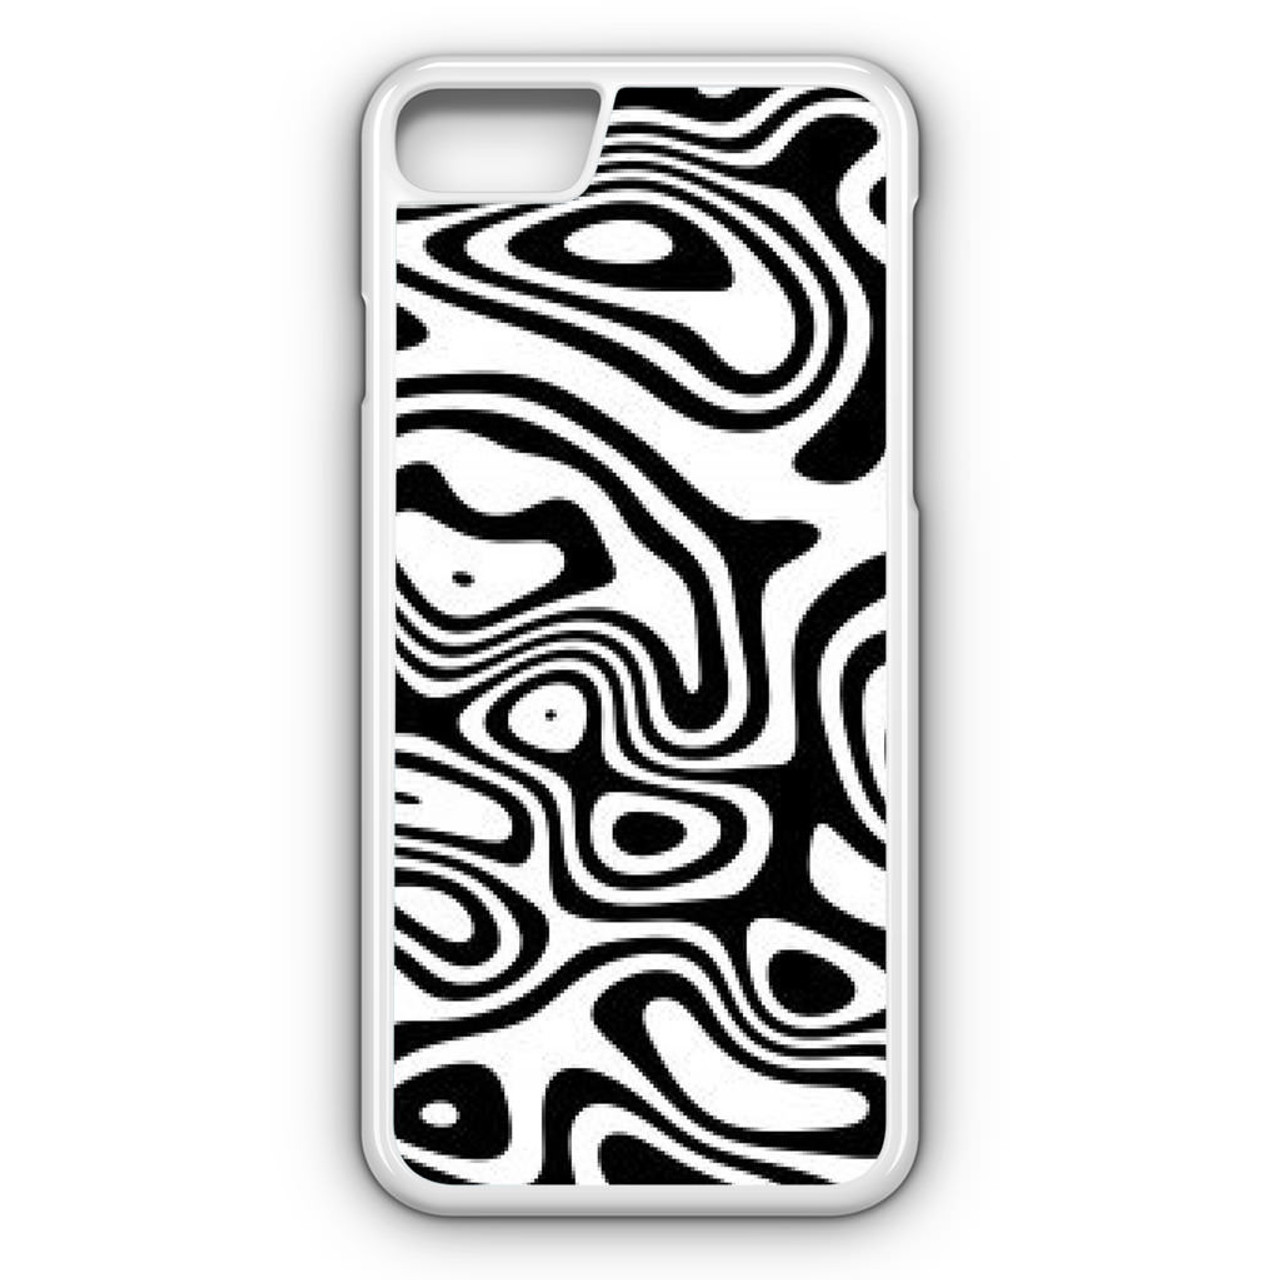 iPhone 8 Case: Bảo vệ chiếc iPhone 8 của bạn với một chiếc ốp lưng hoàn hảo. Hình ảnh liên quan sẽ cho bạn thấy những mẫu vỏ bảo vệ độc đáo và phù hợp với cá tính của bạn. Khám phá ngay và chọn cho mình một chiếc case phù hợp nhất để bảo vệ chiếc điện thoại của bạn.